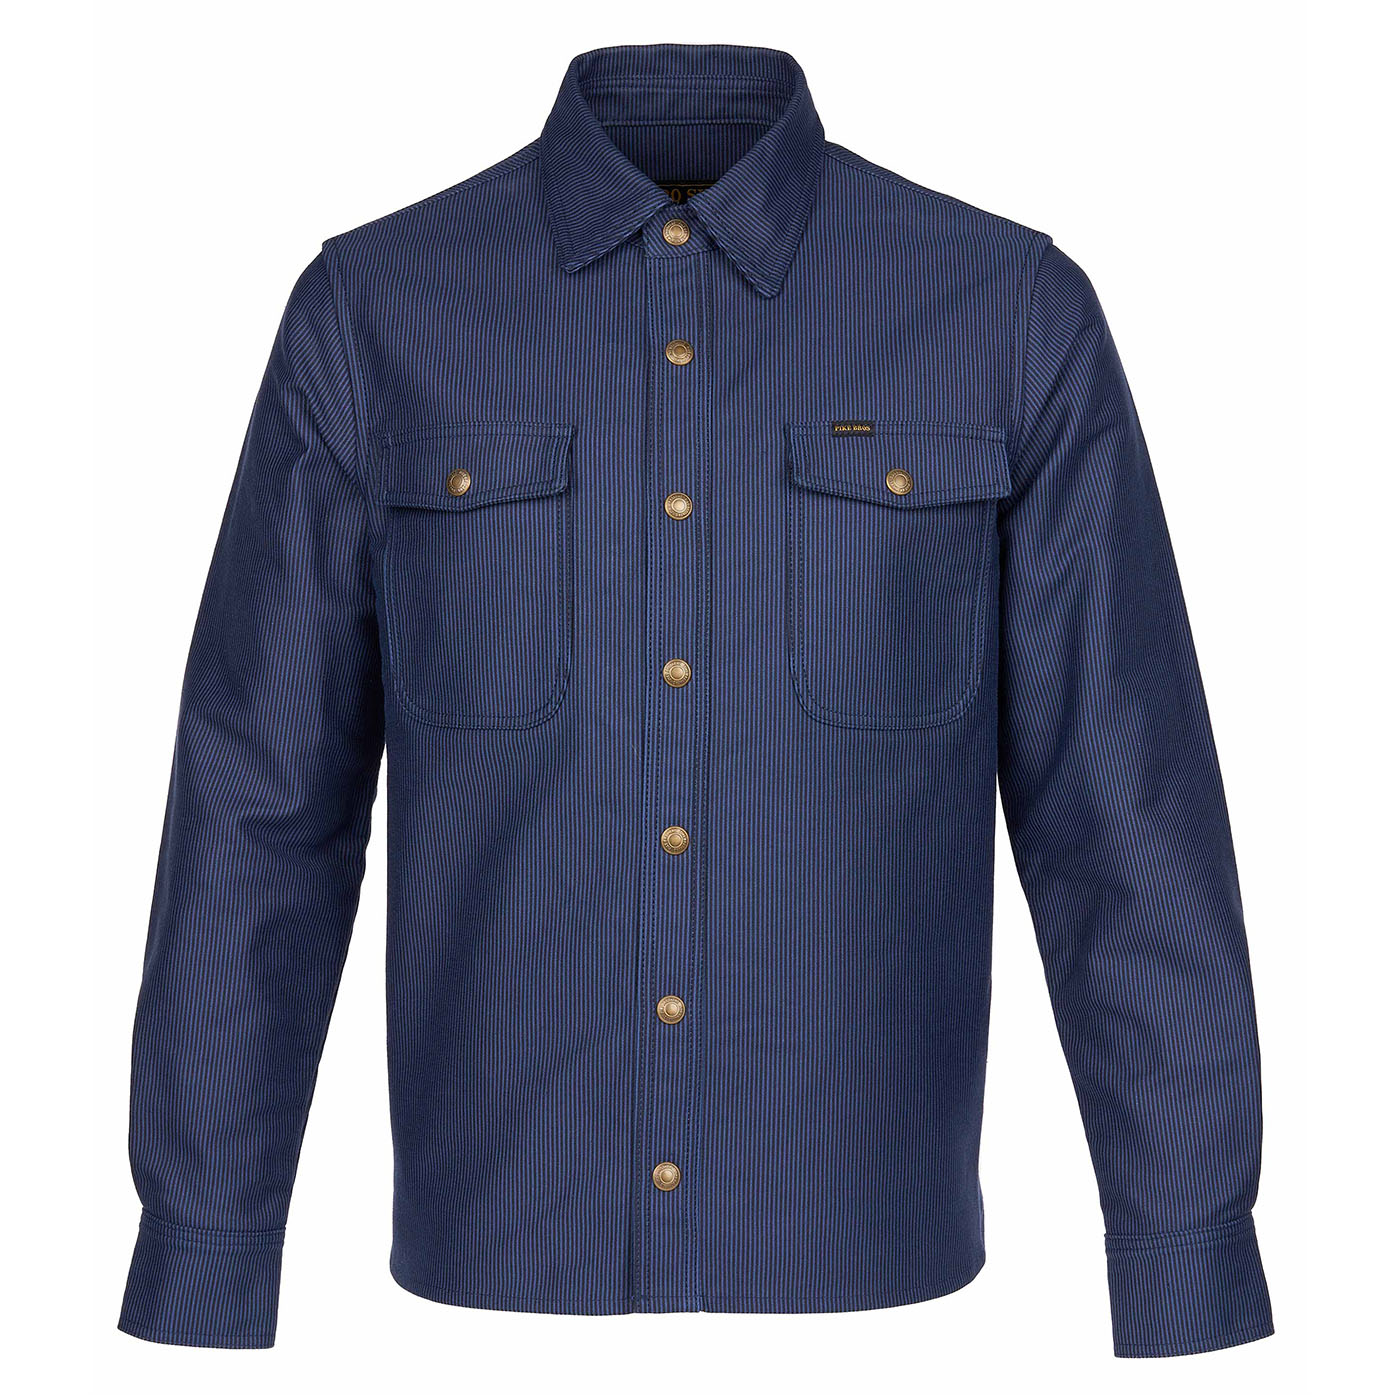 1943 CPO Shirt - Hamburg Blue